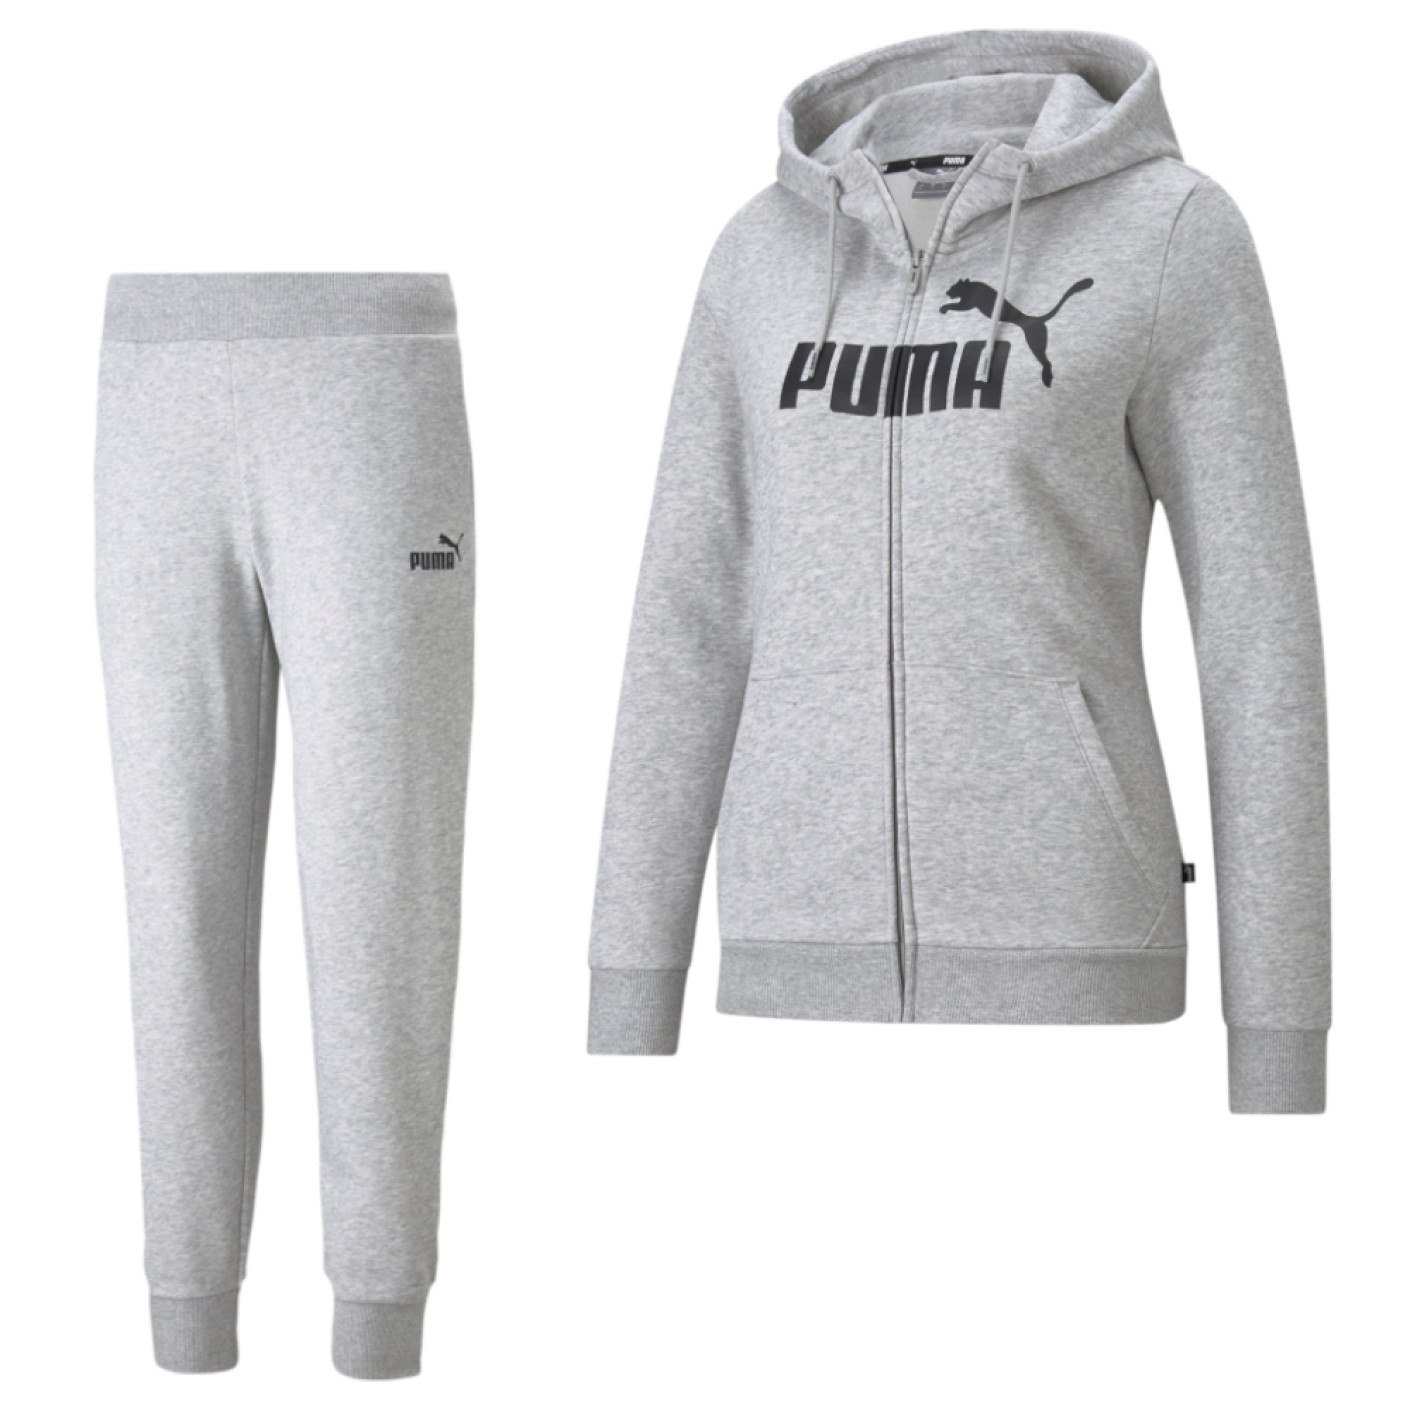 Survêtement à capuche en polaire à fermeture éclair avec logo PUMA Essentials pour femme, gris